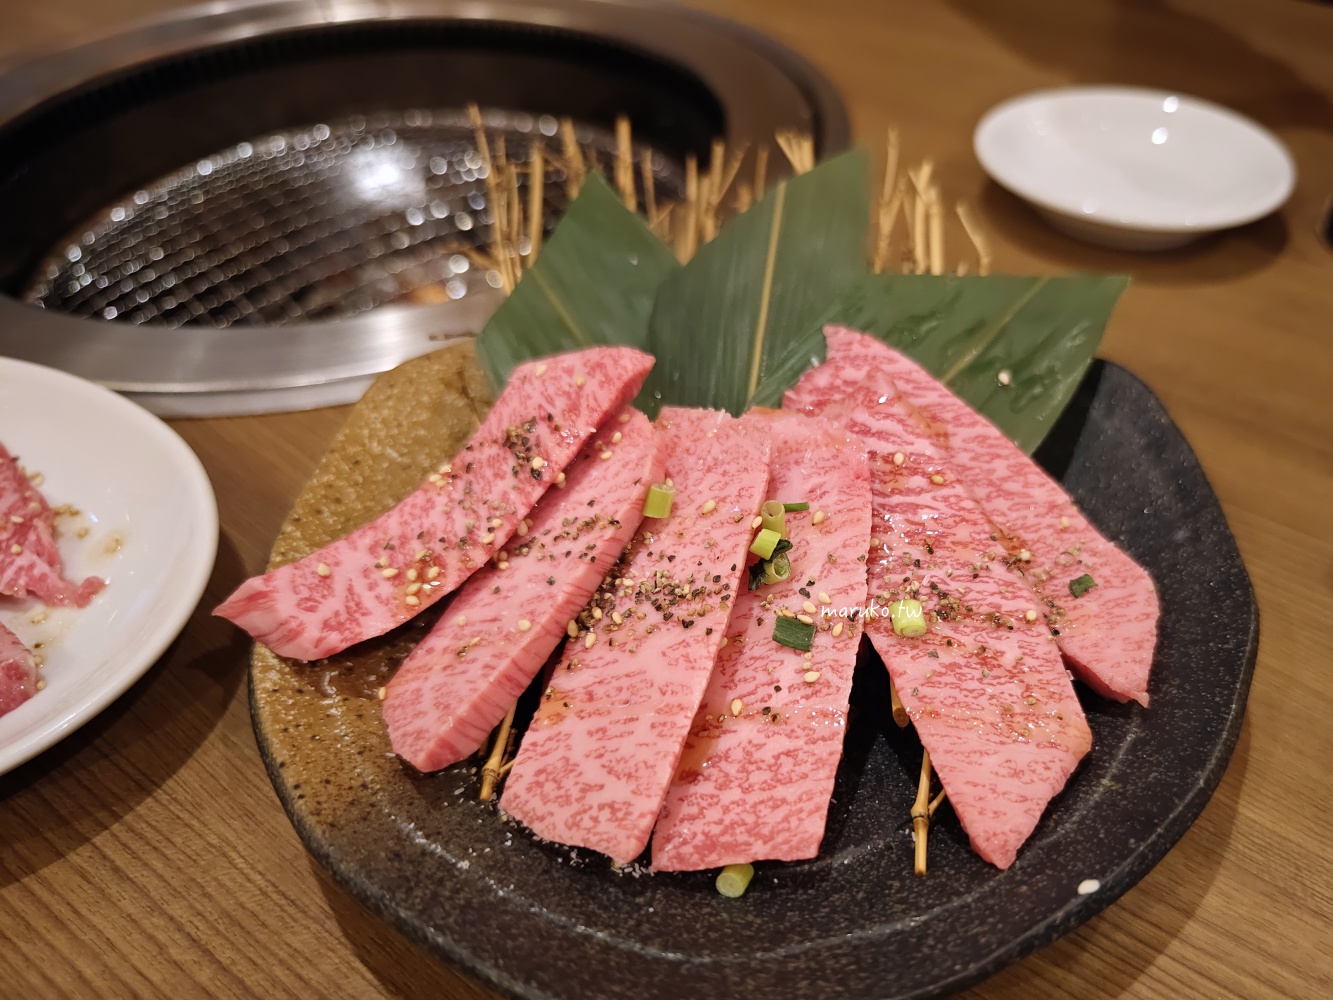 【台北大安】永康牛肉麵｜台灣經典美食觀光客也愛的紅燒牛肉麵 @Maruko與美食有個約會